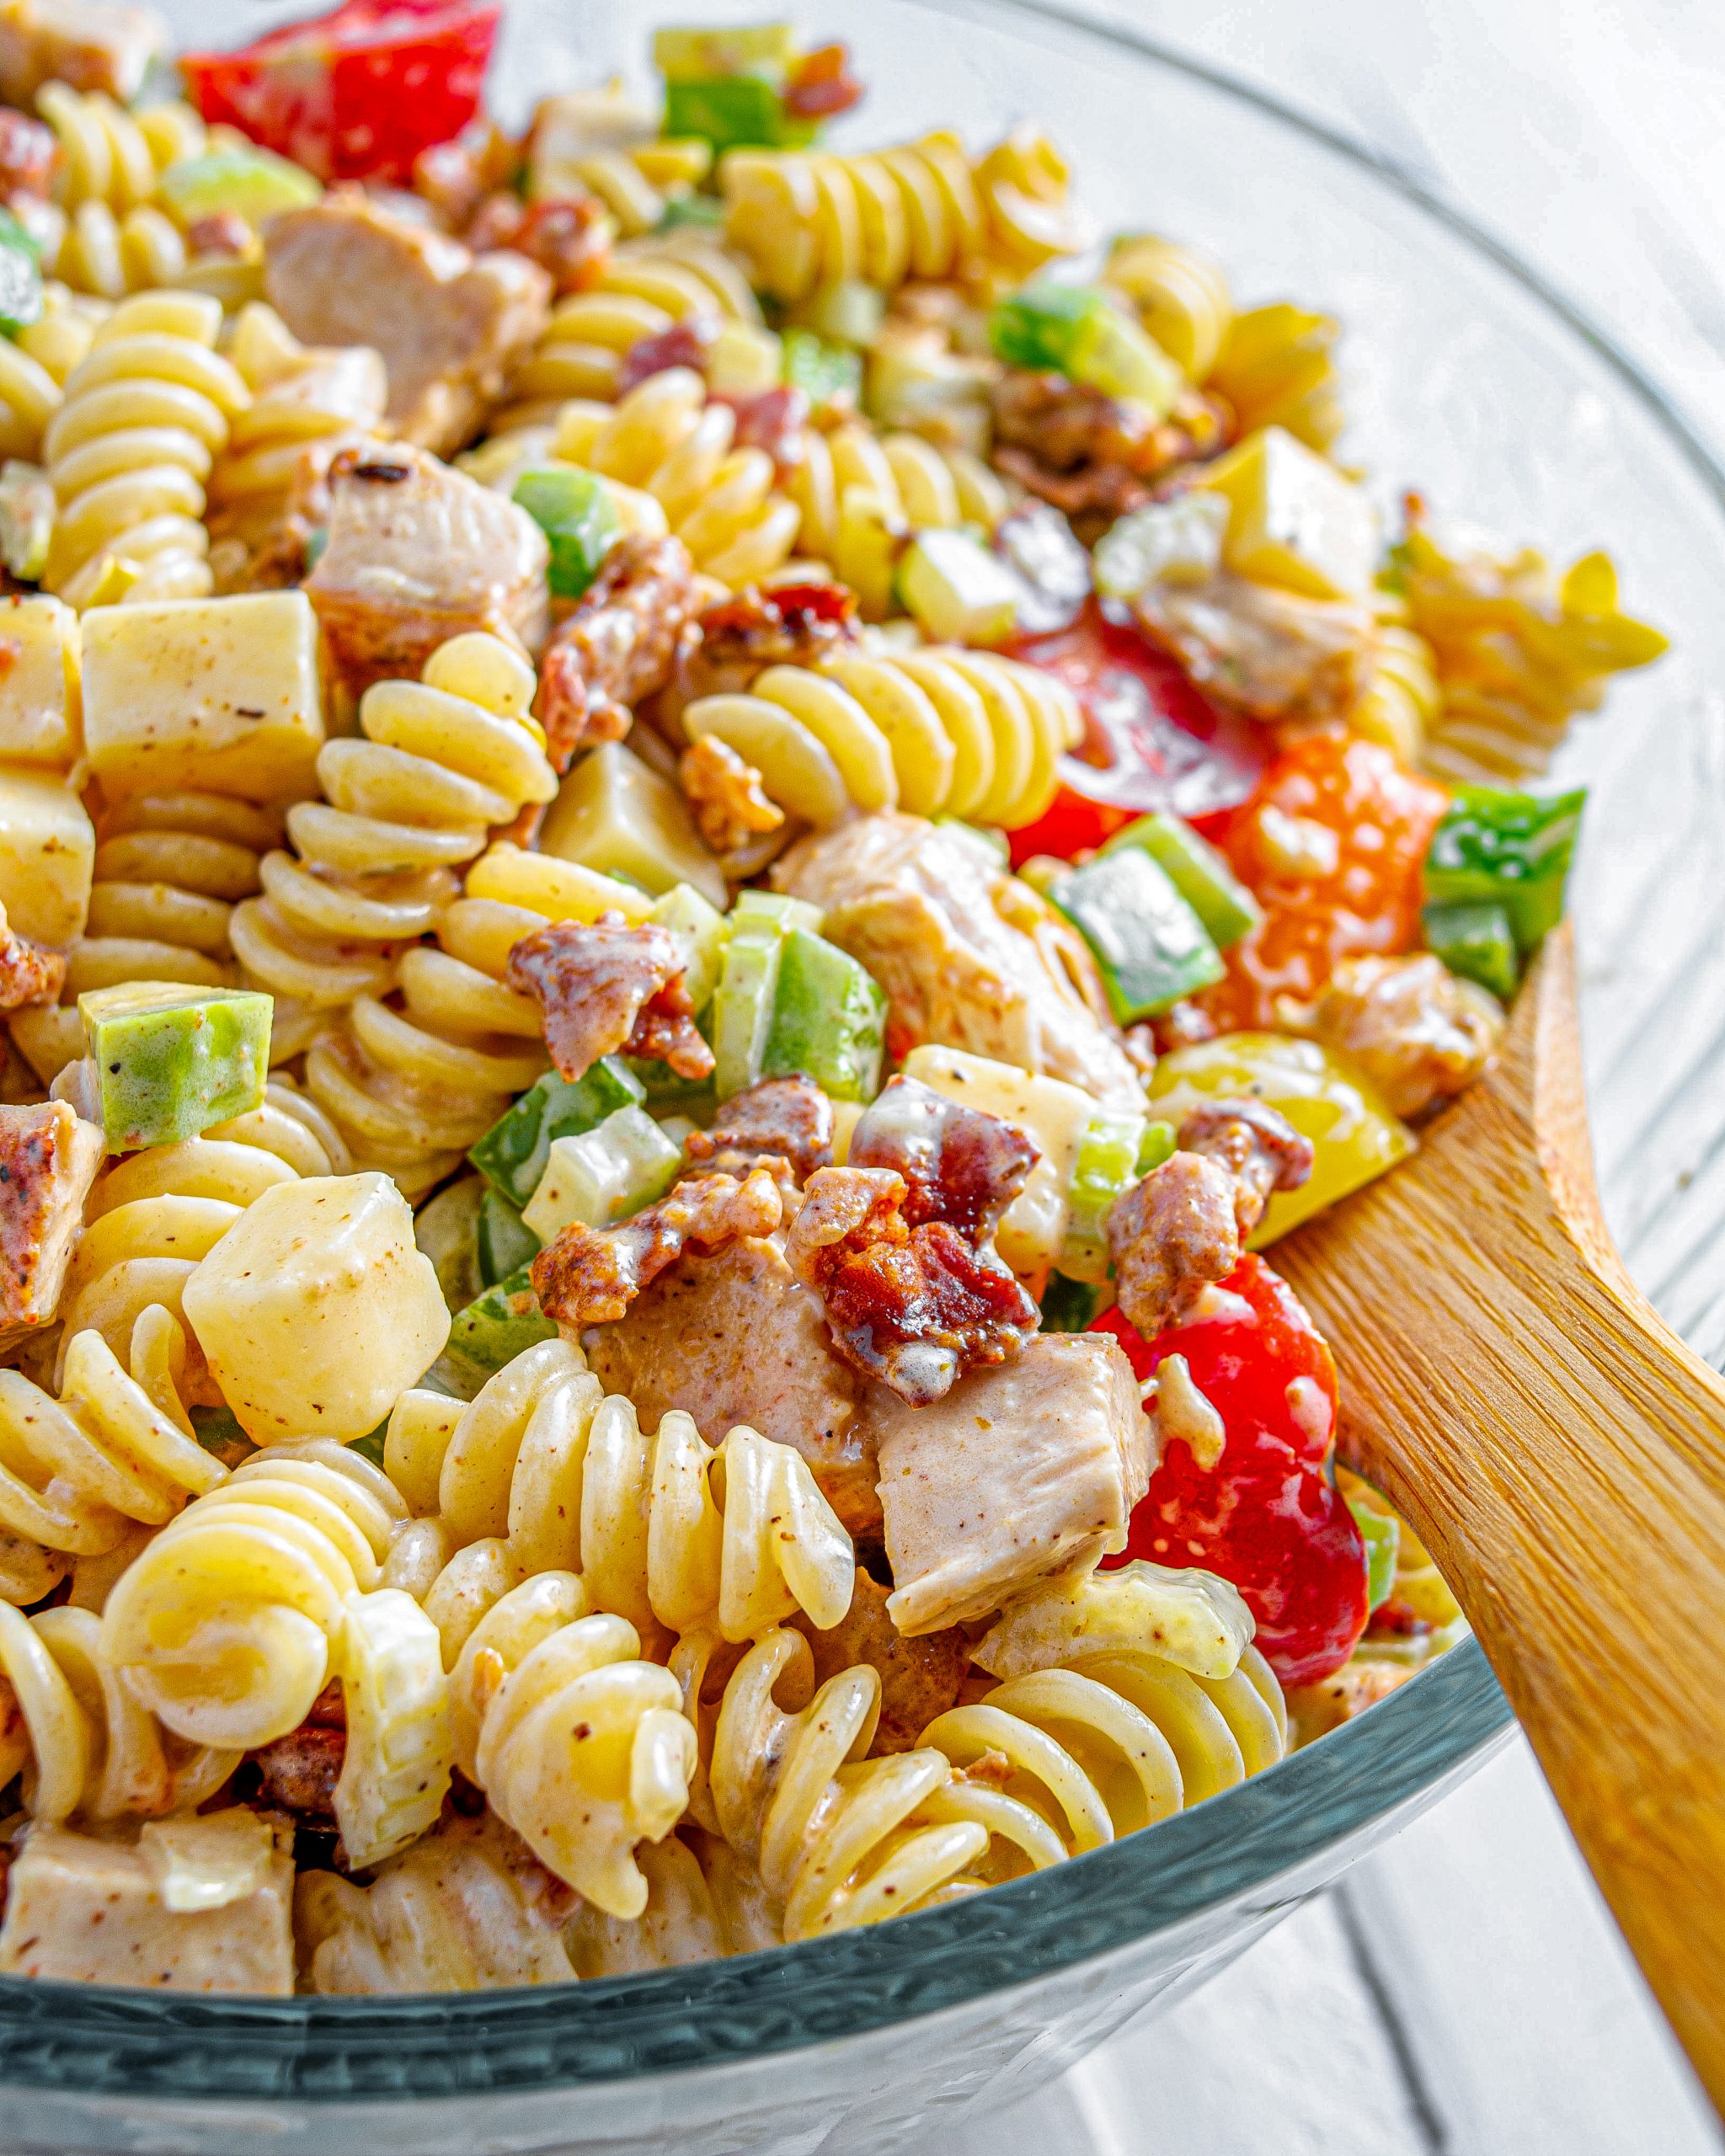 chicken club pasta salad, chicken pasta salad, pasta salad with chicken